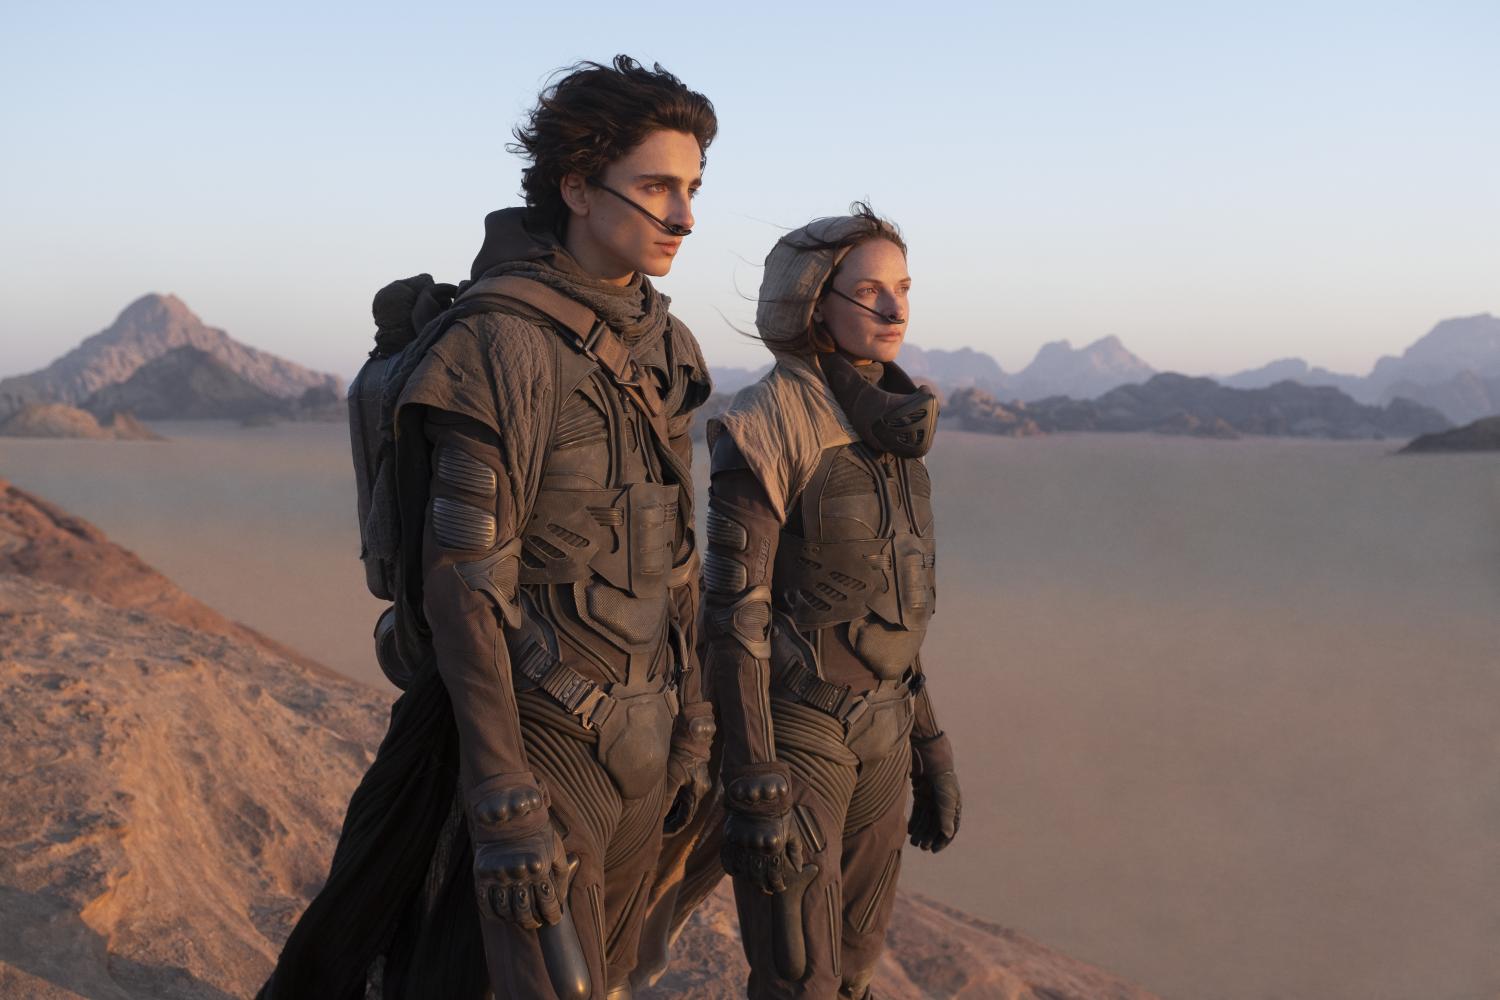 Timothee Chalamet und Rebecca Ferguson in einer Szene aus dem Film "Dune" (2021)